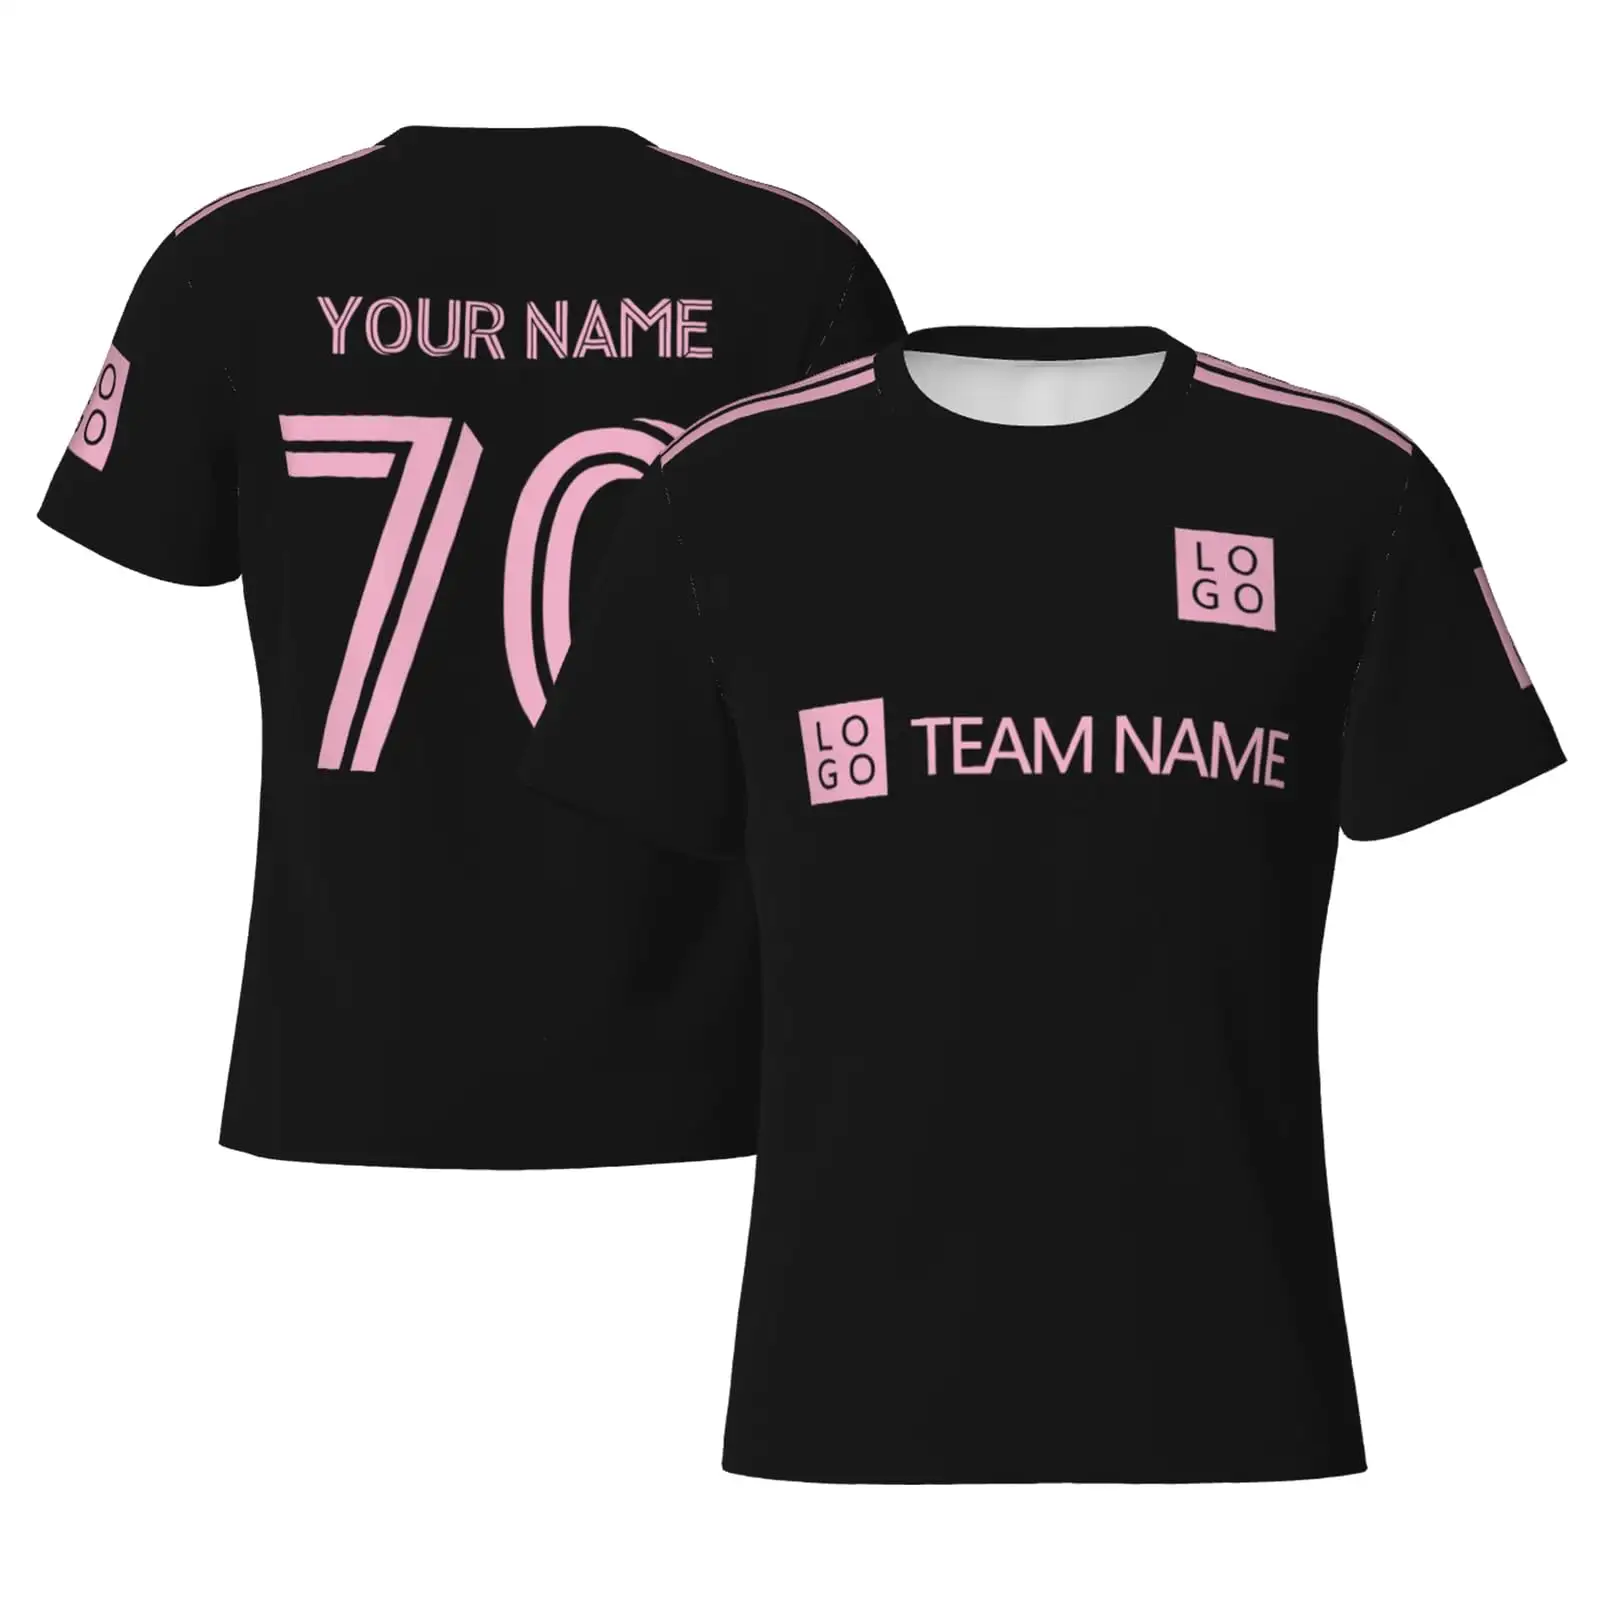 Ucuz toptan erkekler nefes futbol forması şort takımı özelleştirilmiş takım adı numaraları ile günlük T-Shirt kalite toptan Tee